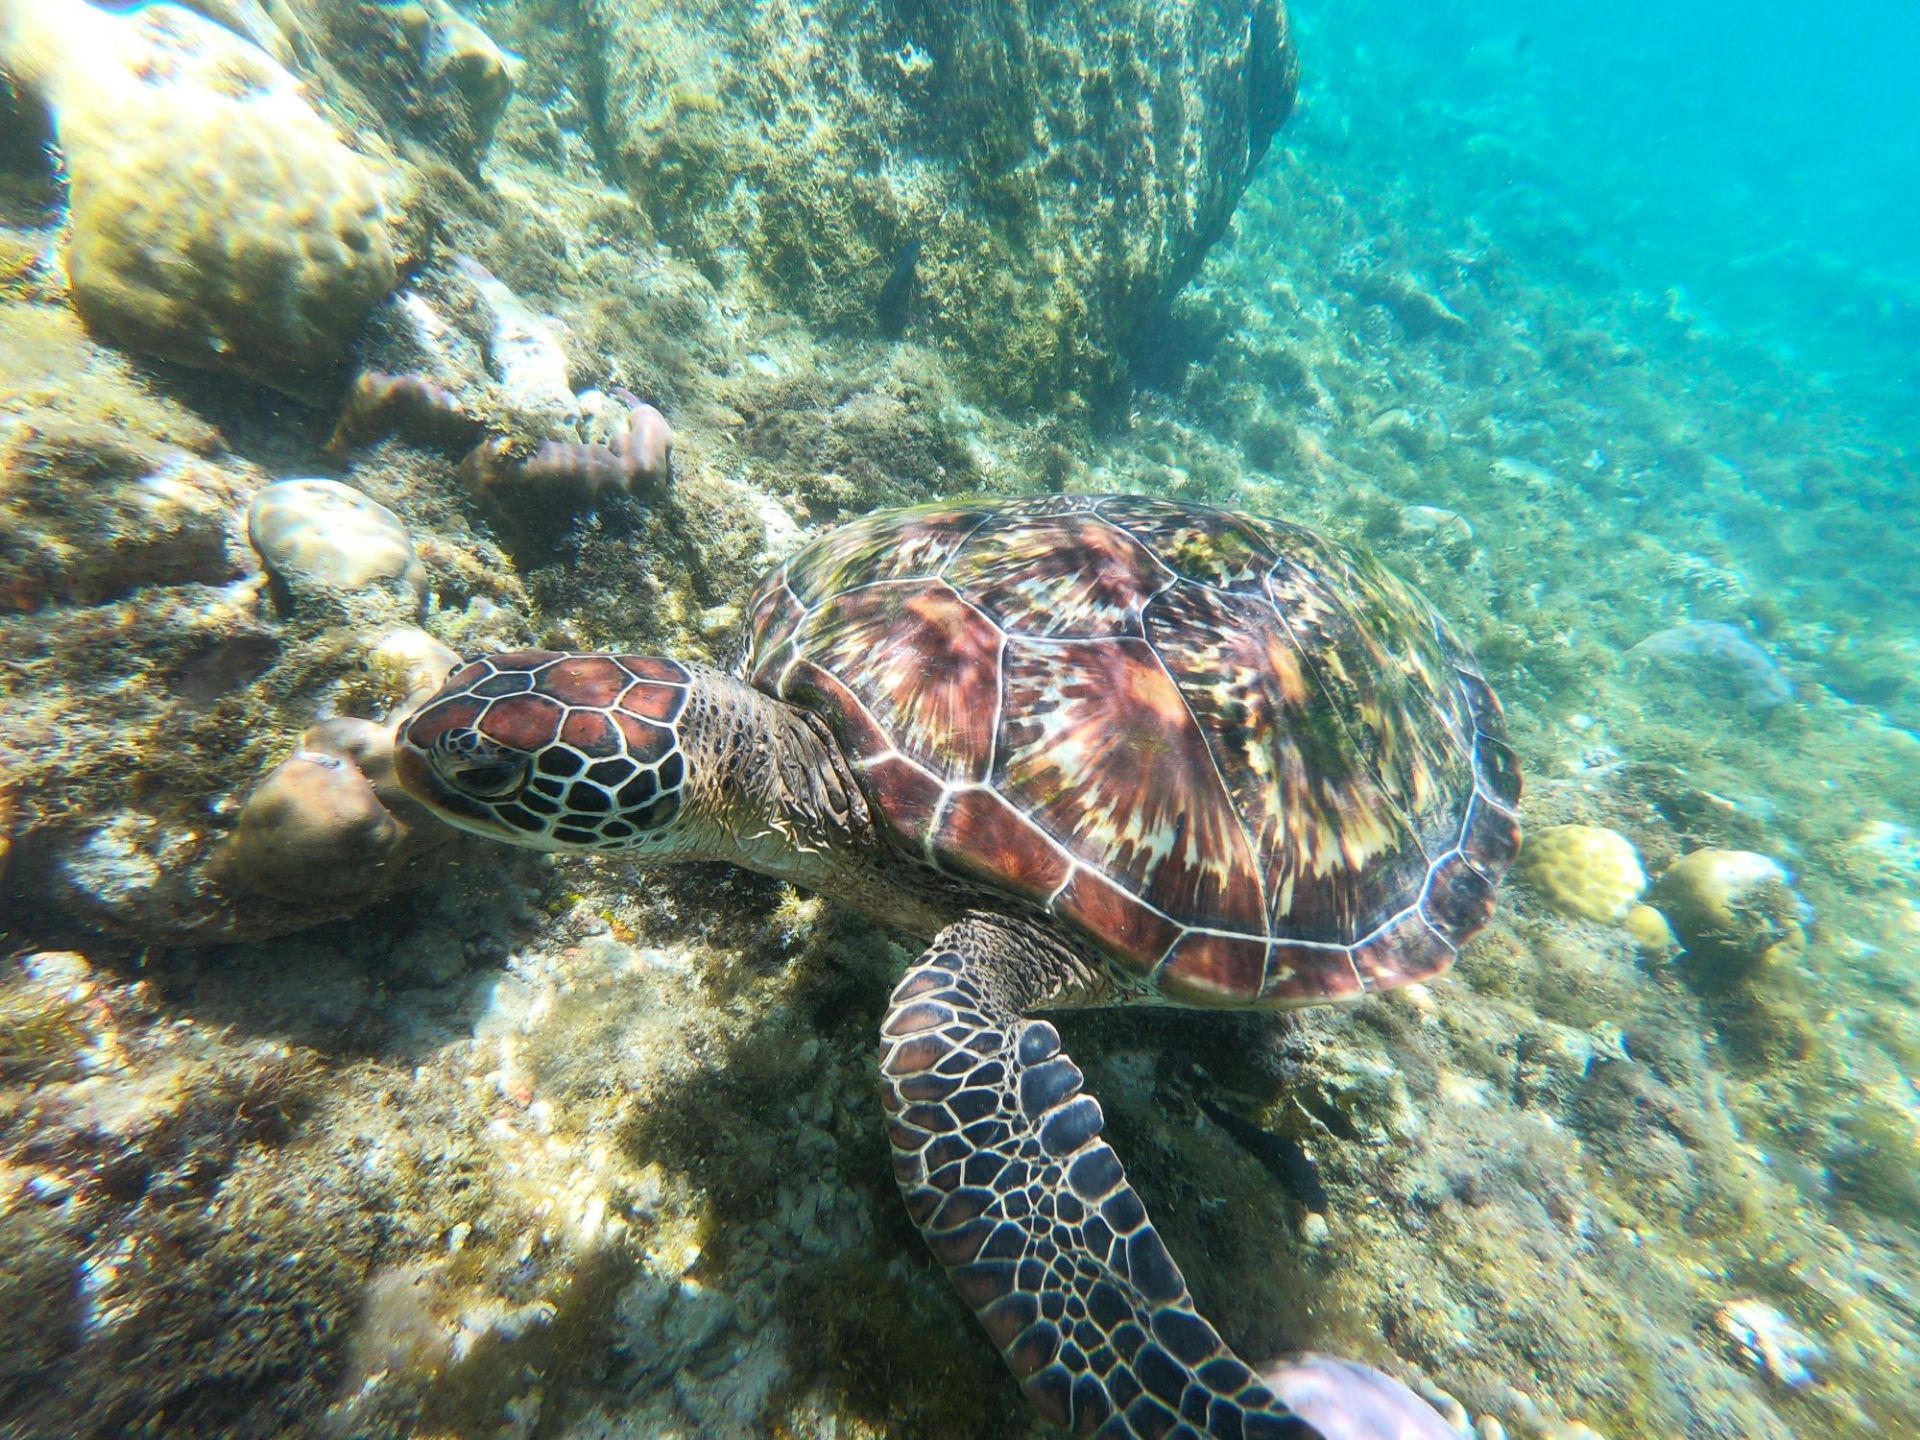 菲律宾小岛apo岛有海龟保护区，在十米远的近海区域就可以多次频繁看到海龟觅食，愿这些海洋精灵永远自由